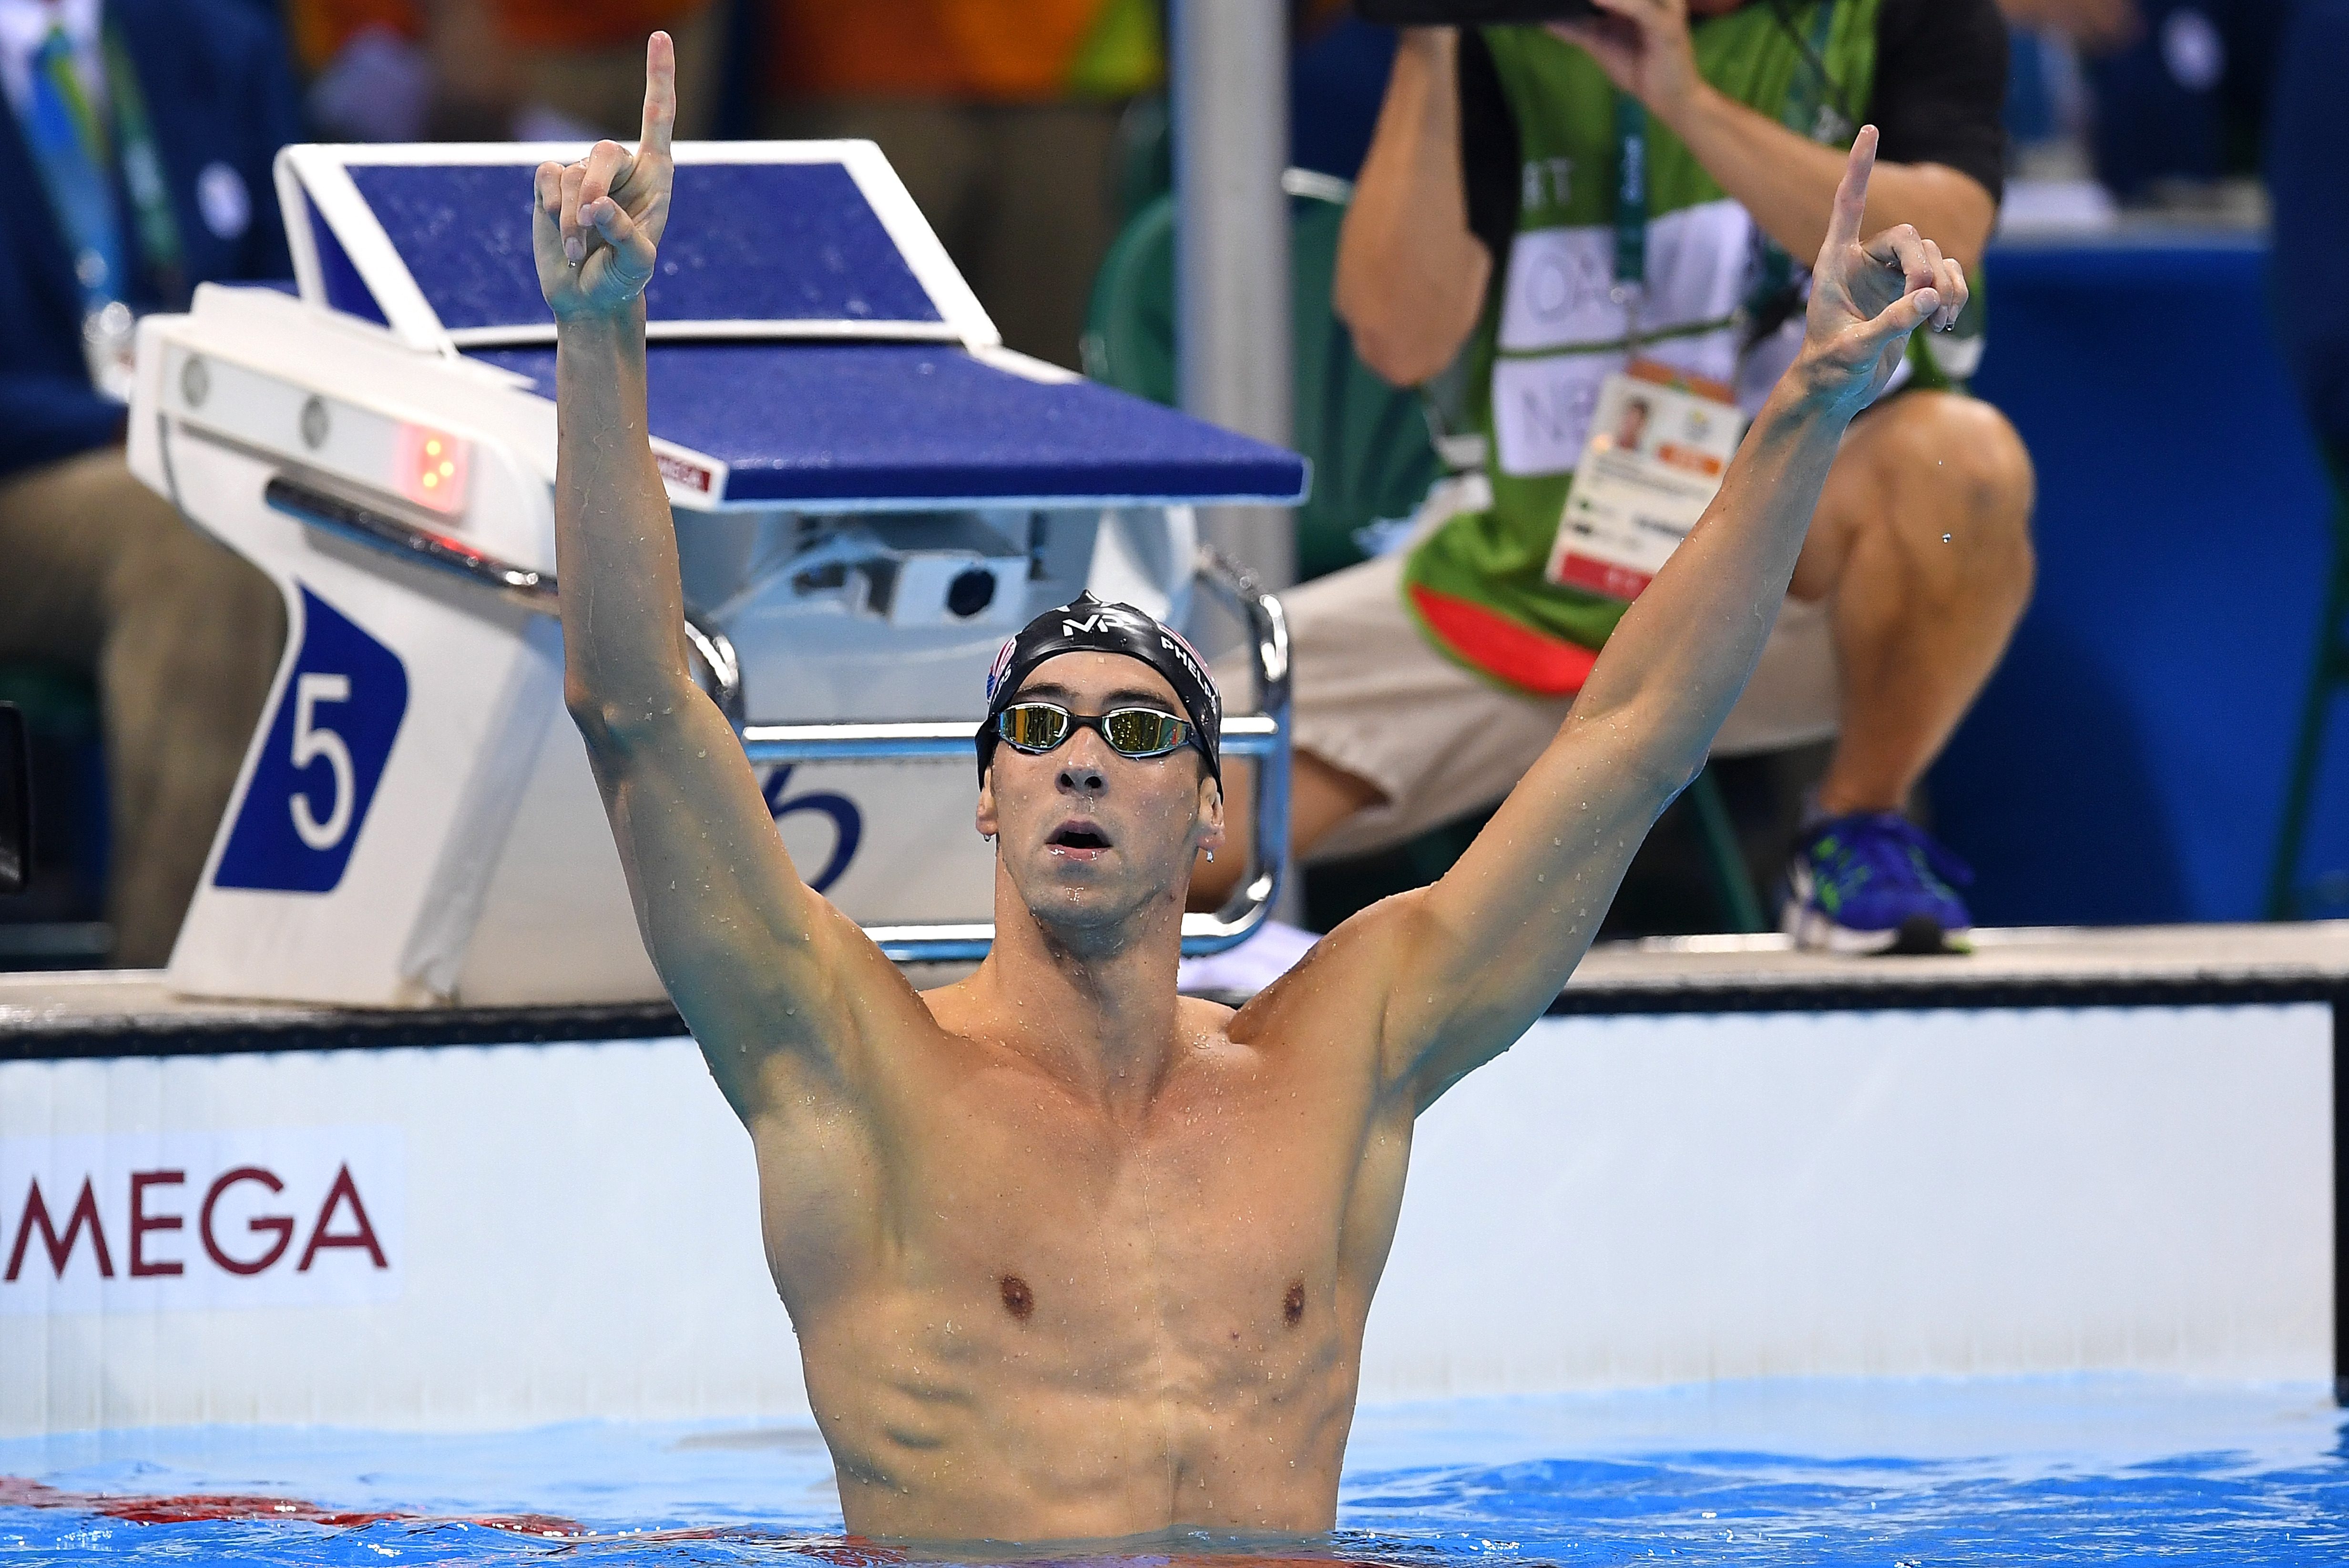 Atlet renang AS, Michael Phelps, saat memenangi tanding 4x200 gaya bebas relay di Olimpiade Rio, pada 9 Agustus 2016. Foto oleh Dave Hunt/EPA 